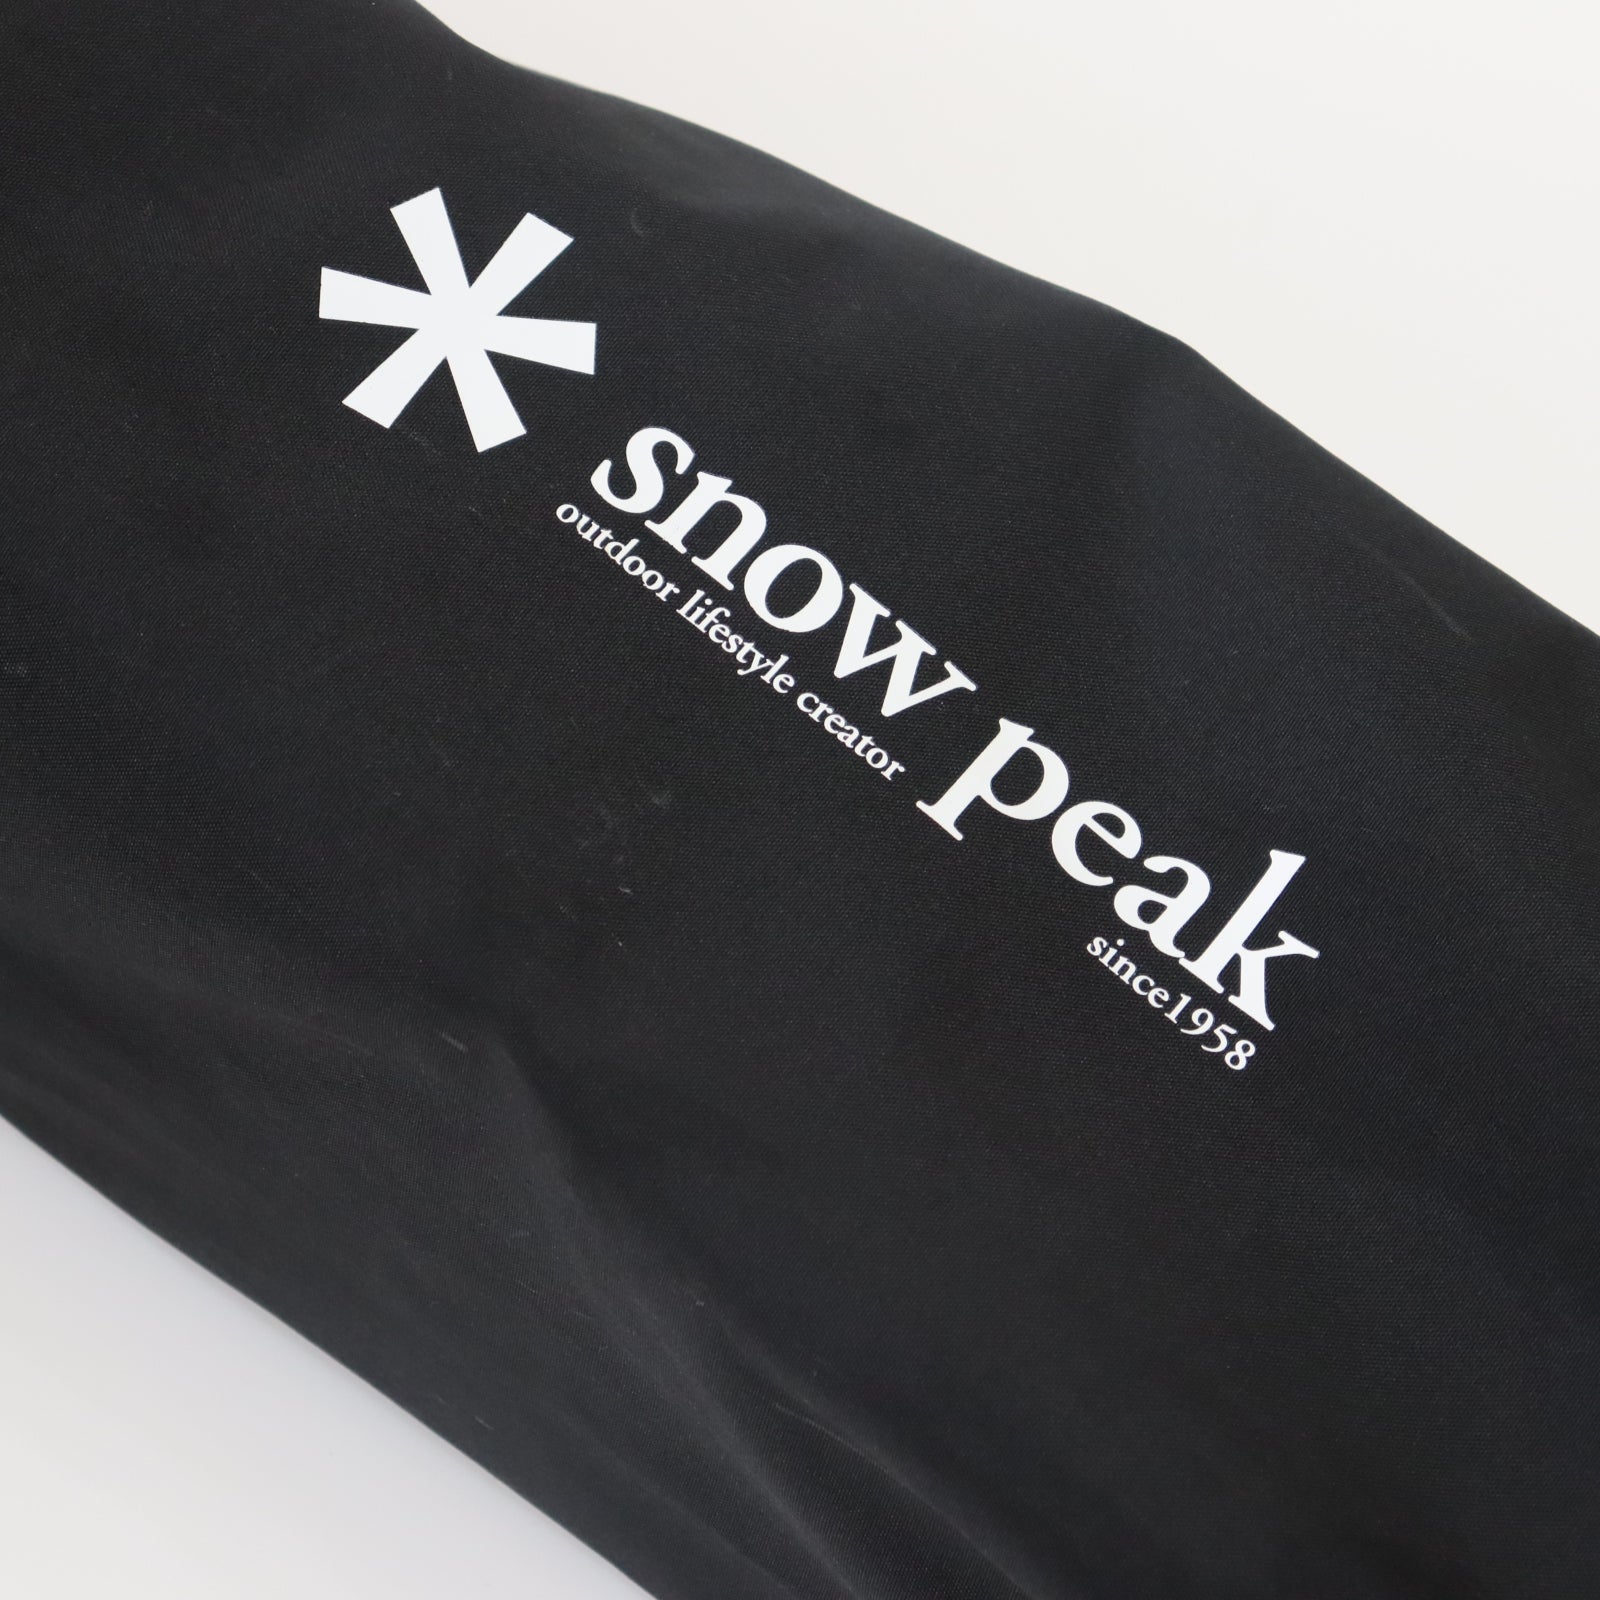 スノーピーク(Snow Peak)/ローチェアショート ブラック雪峰祭